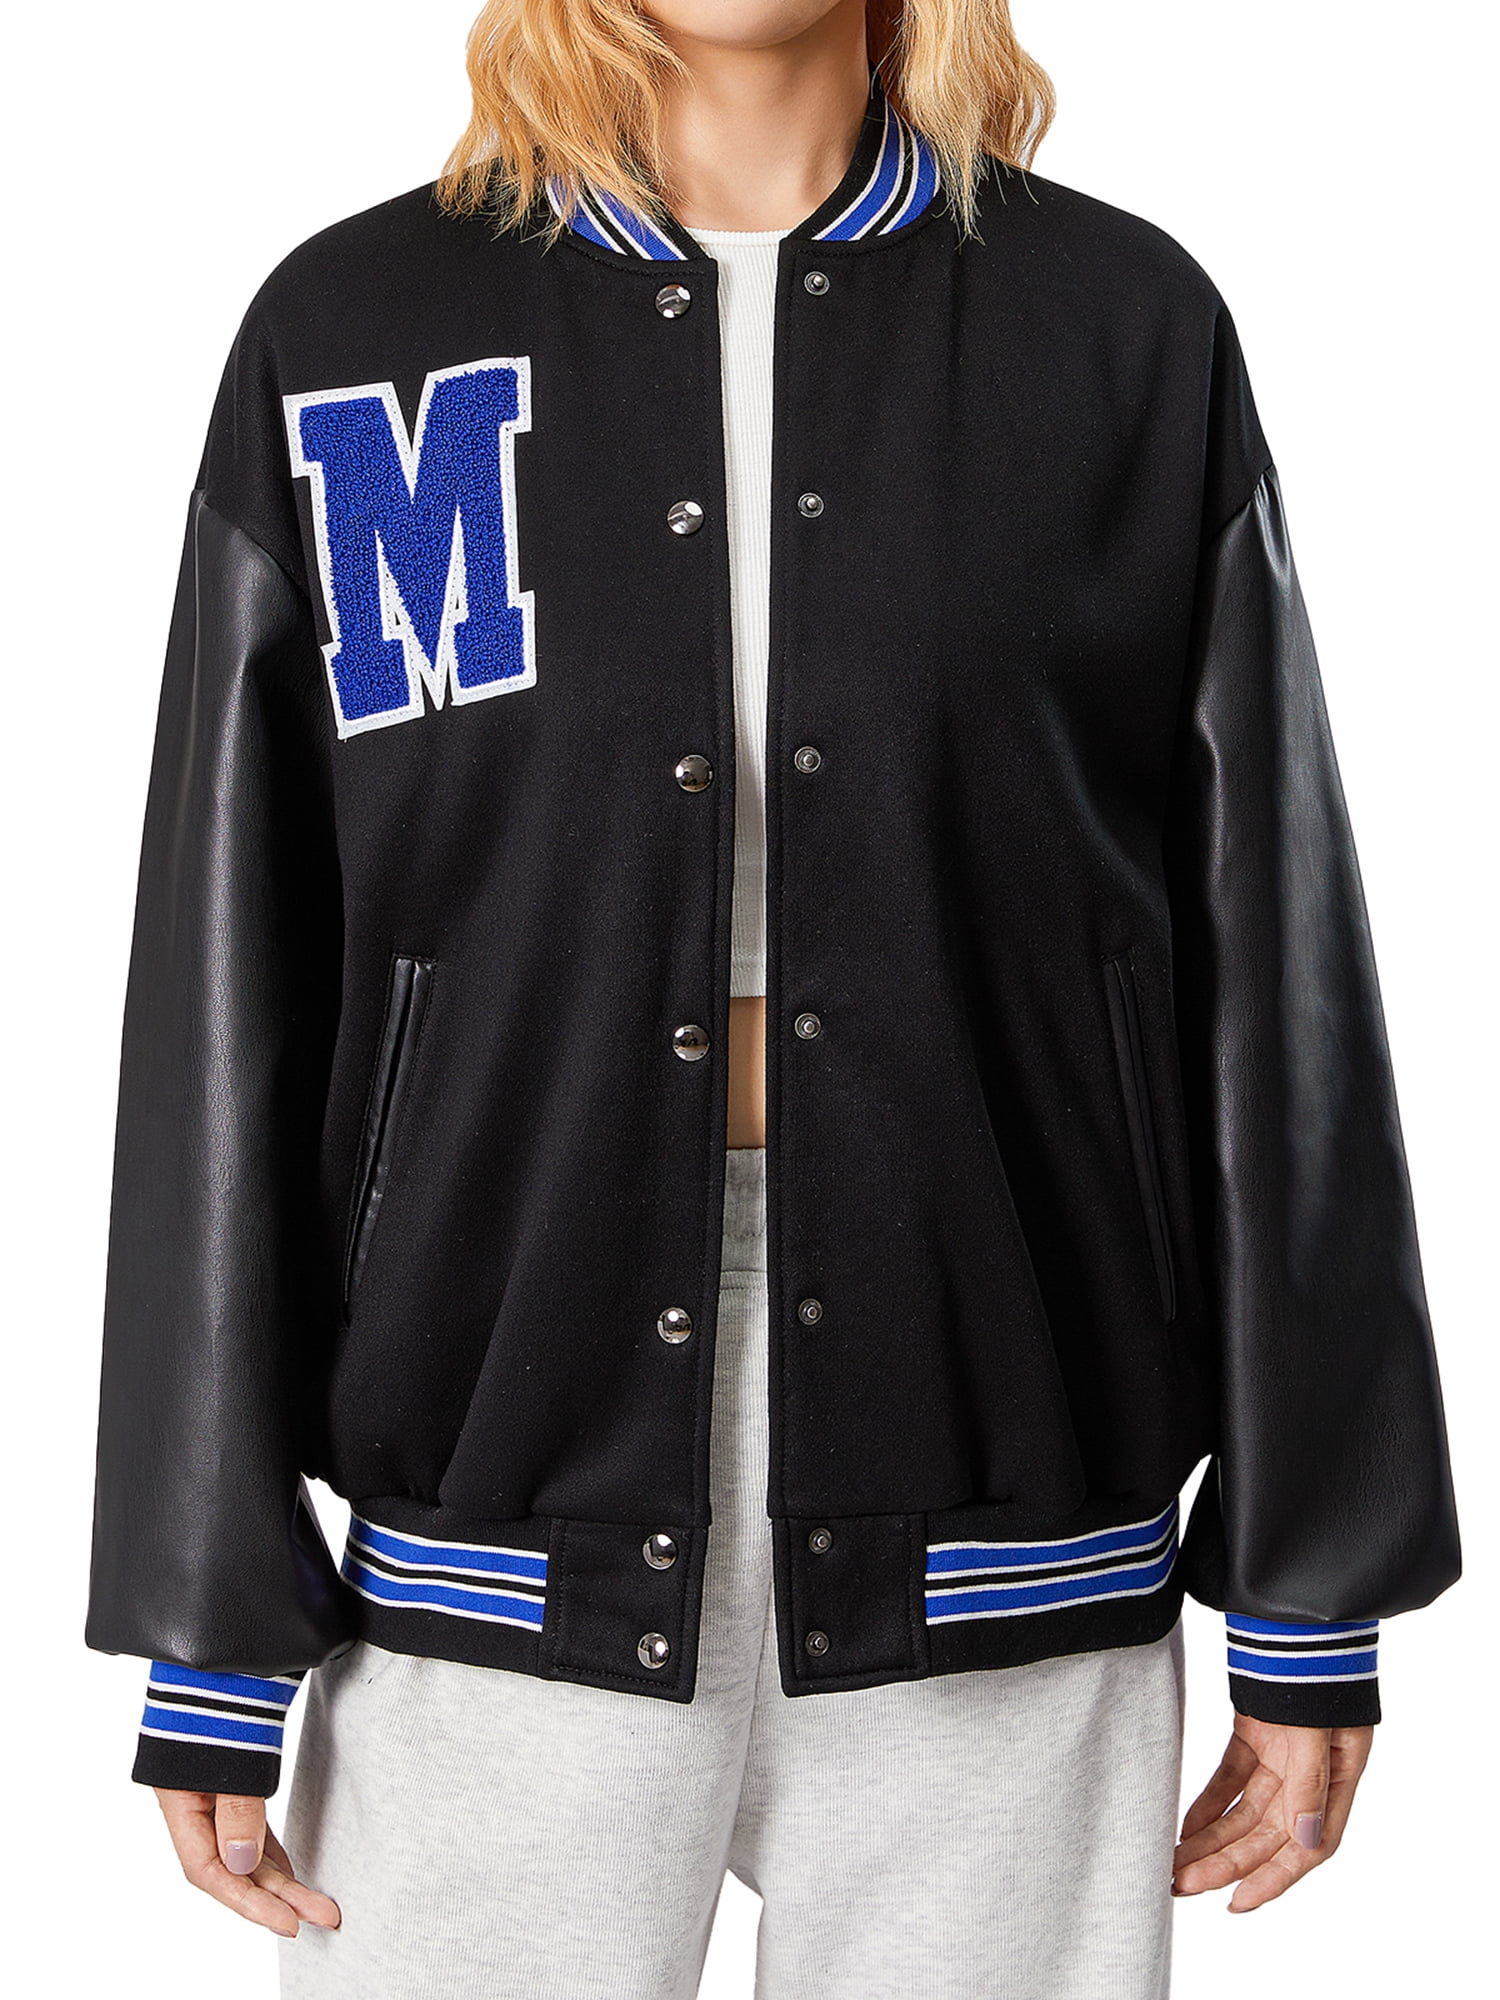 Varsity Jacket Mens, Jacket Streetwear, Baseball Jacket